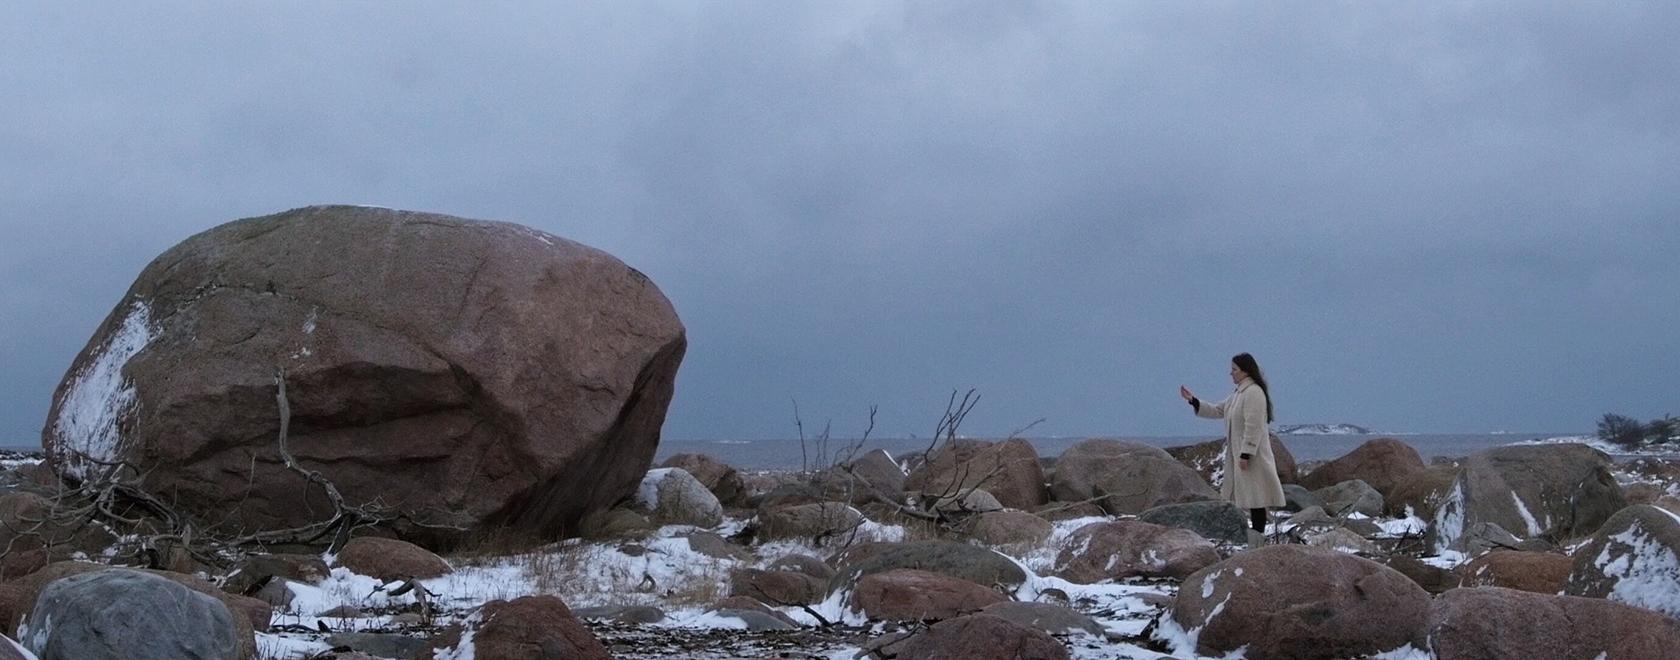 Valokuva talvisesta maisemasta, vasemmalla suuri kivi, oikealla pienessä koossa ihminen